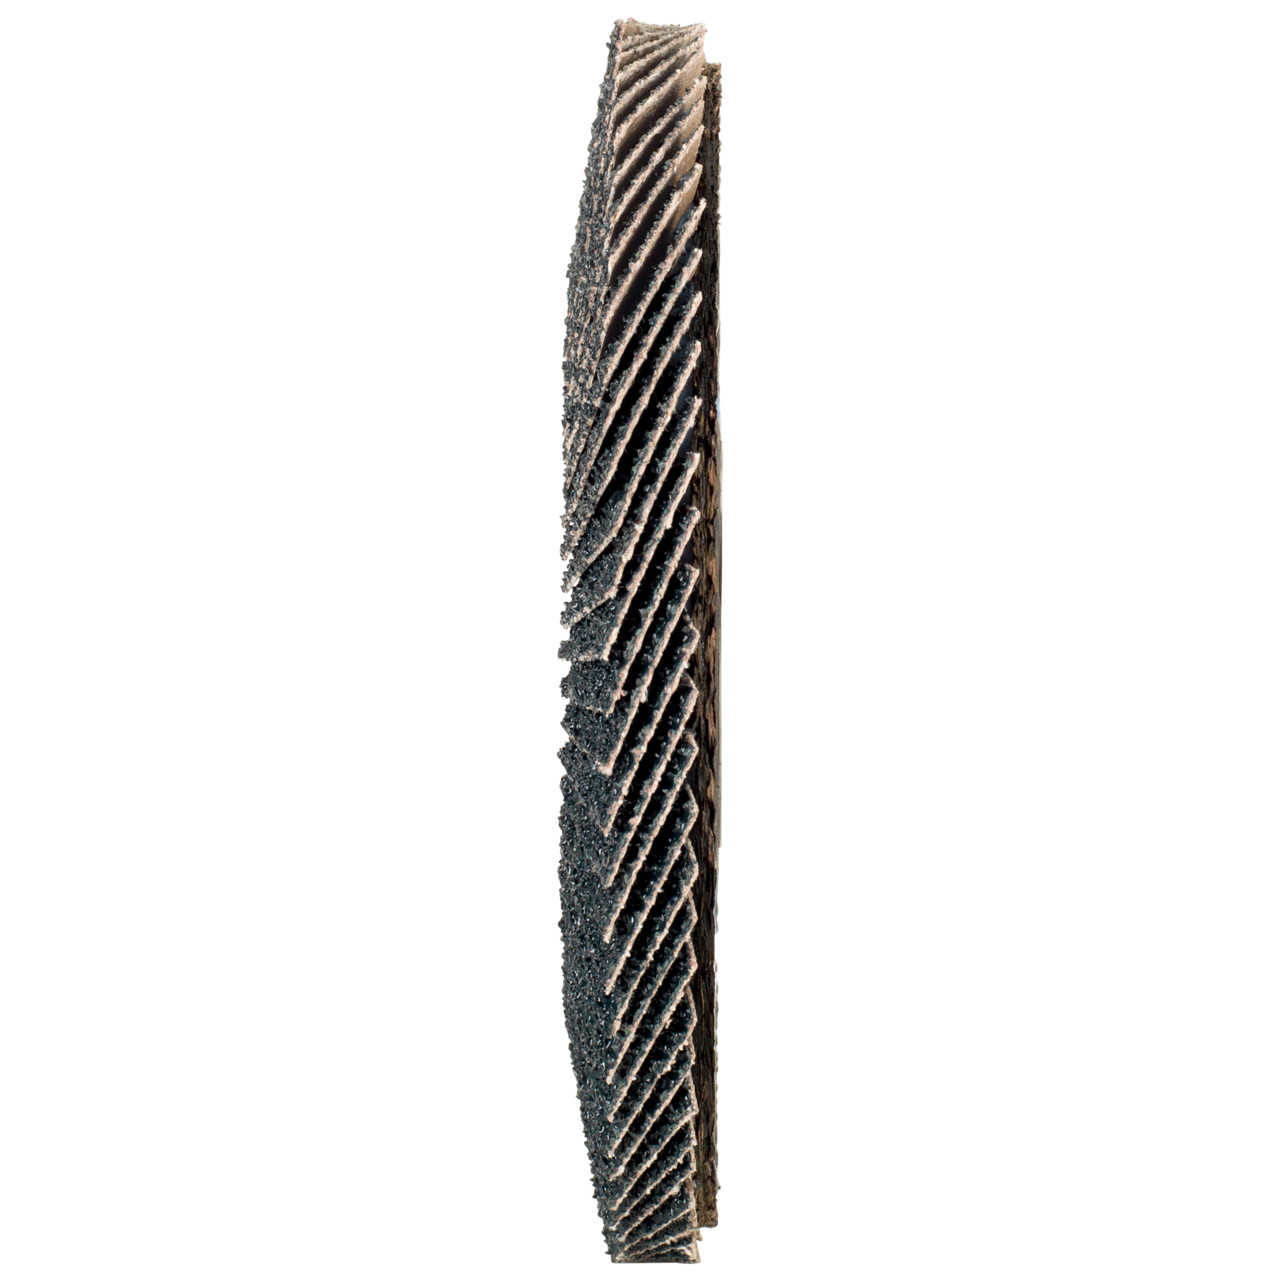 Rondella dentata Tyrolit DxH 178x22.2 2in1 per acciaio e acciaio inox, P60, forma: 27A - versione a manovella (versione con corpo portante in fibra di vetro), Art. 668672